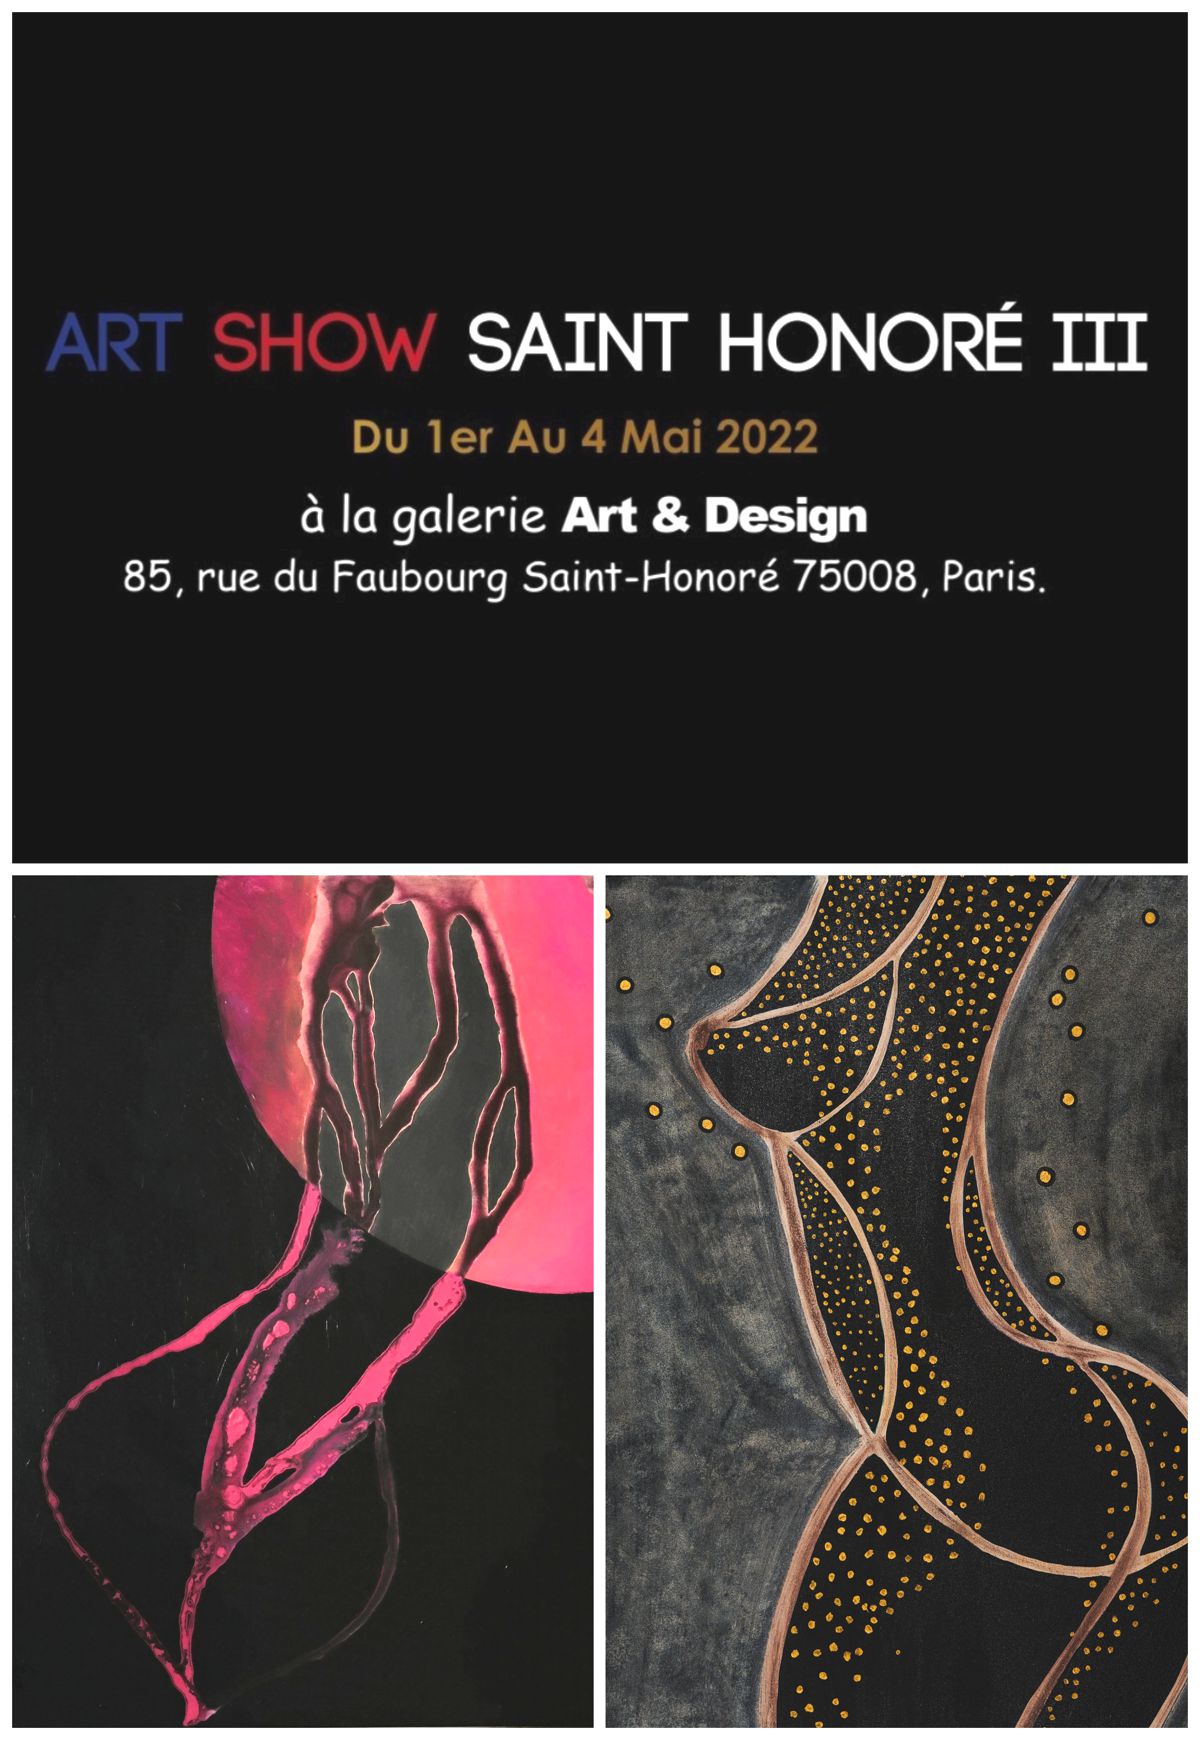 Art Show Paris St-Honoré lll 
Du 1er au 4 mai 2022
85, Fb Saint -Honoré , Paris